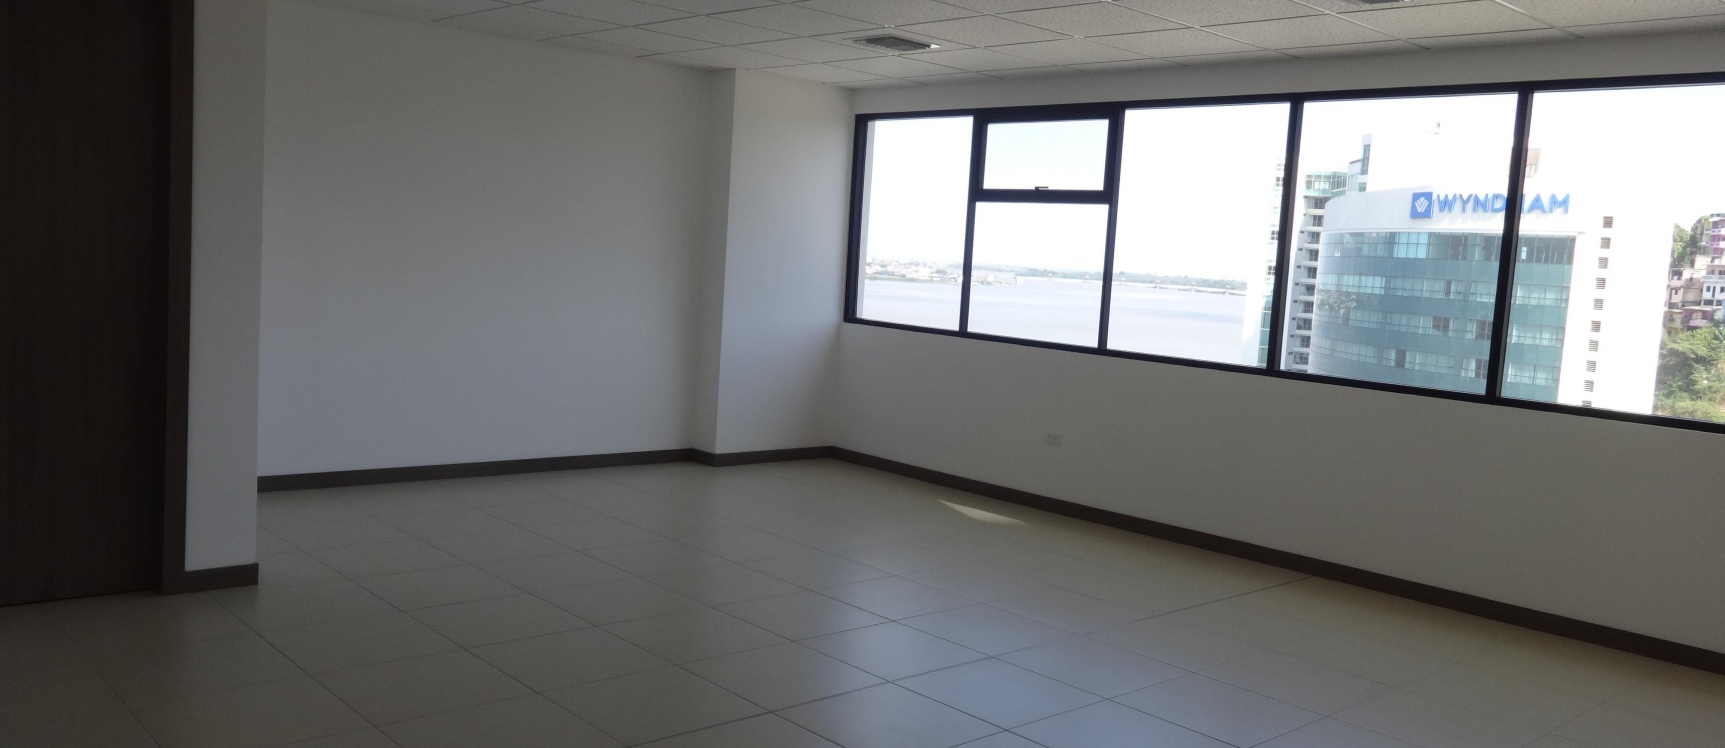 GeoBienes - Alquiler de oficina en Ciudad del Rio, EMPORIUM Guayaquil - Plusvalia Guayaquil Casas de venta y alquiler Inmobiliaria Ecuador